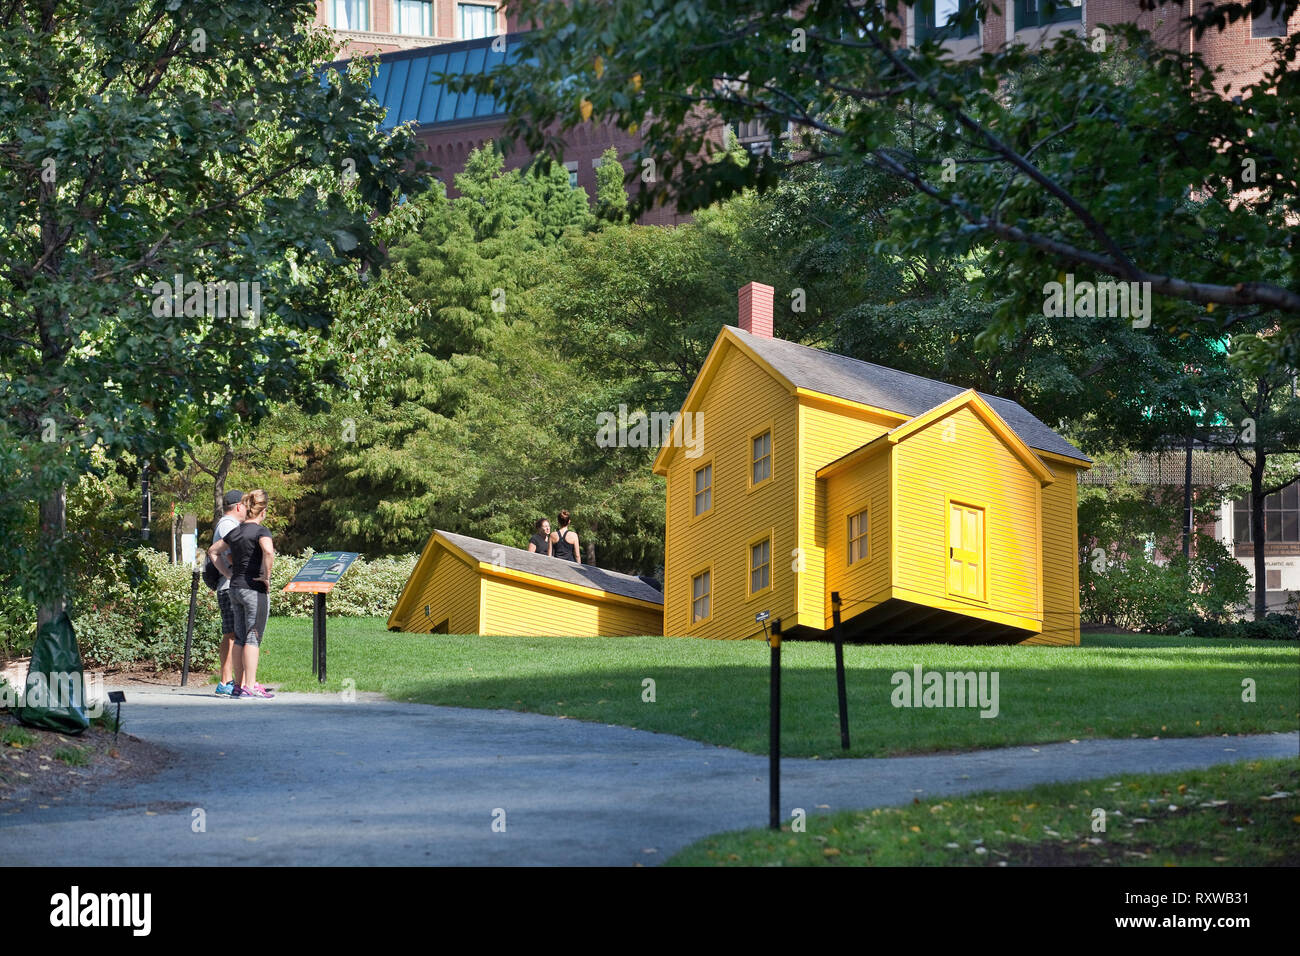 Maison Jaune partiellement coulé dans la pelouse par l'artiste Mark Reigelman et intitulée "La réunion" dans la chambre Rose Kennedy Greenway, Boston, Massachusetts, USA Banque D'Images